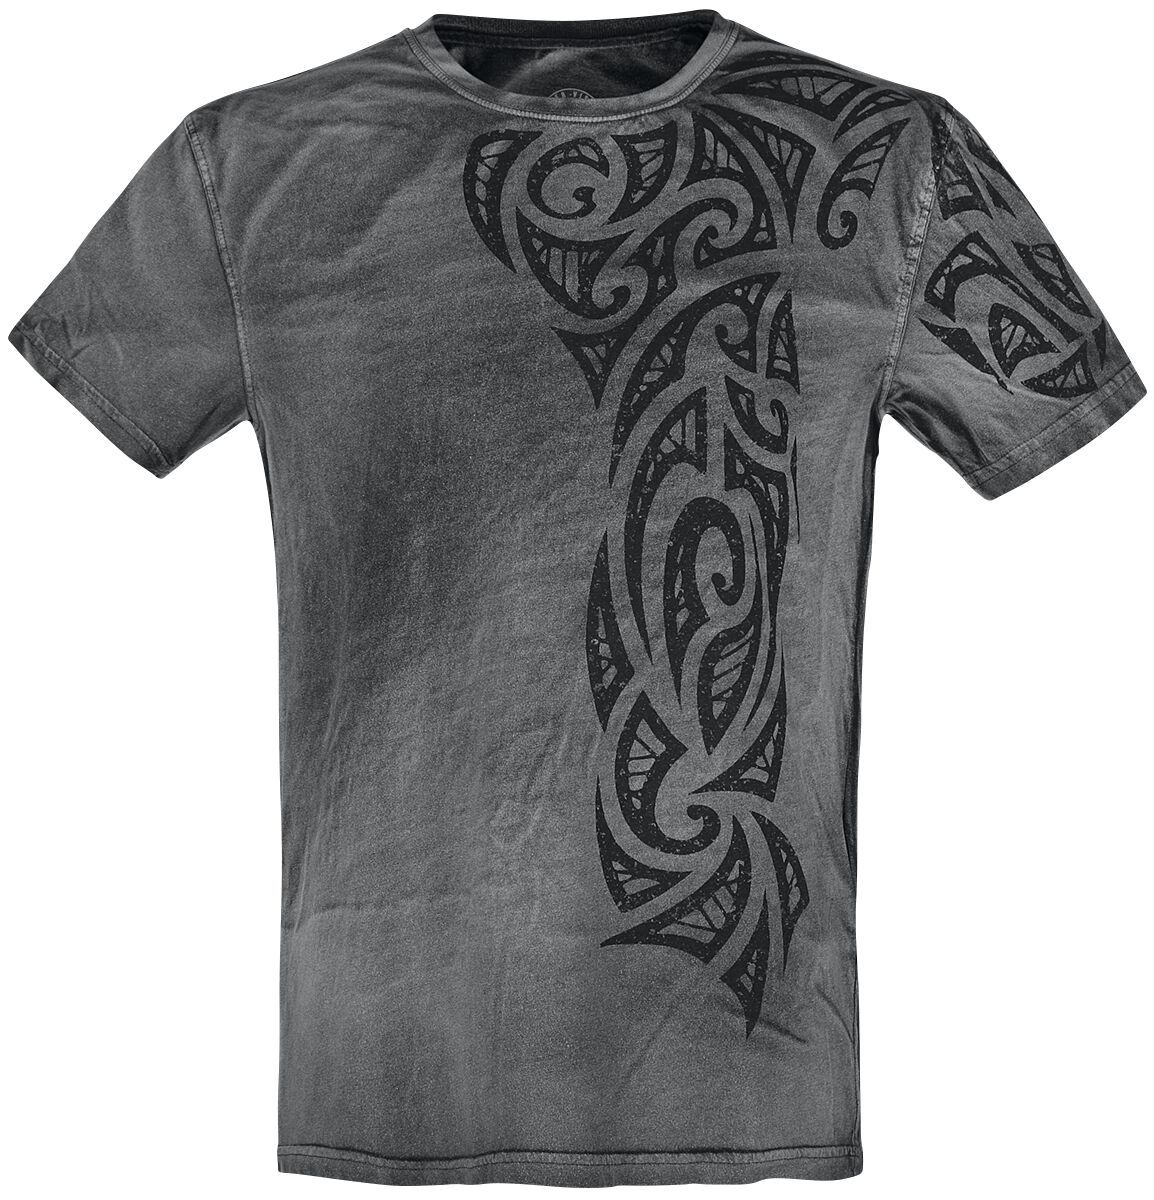 Outer Vision T-Shirt - Gothic Tattoo - S bis 4XL - für Männer - Größe XL - grau